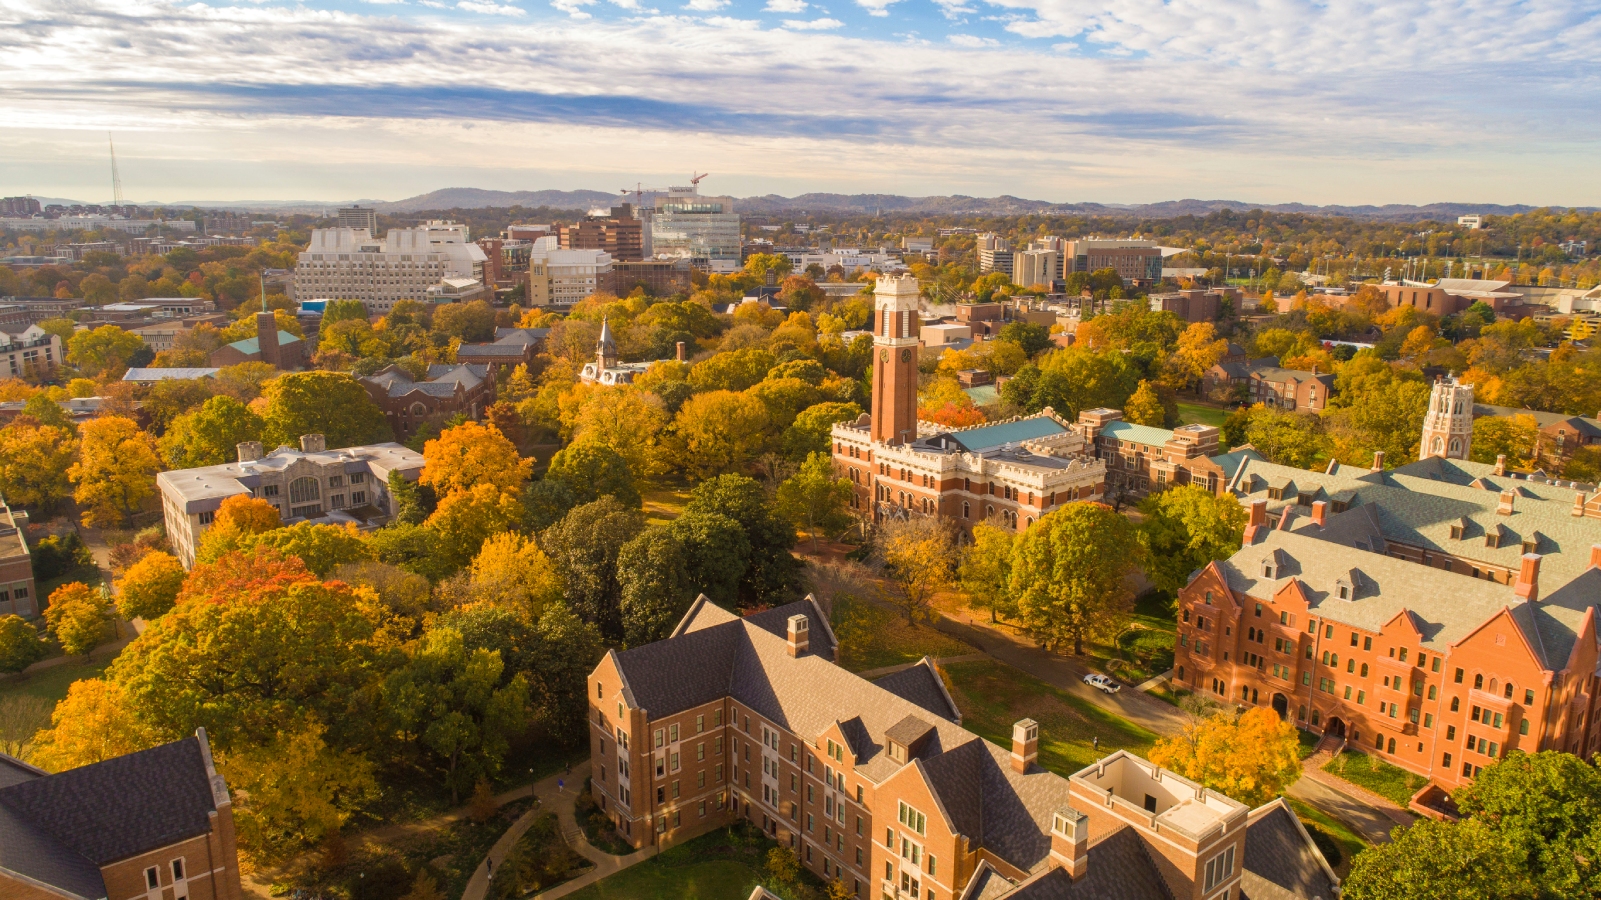 Aerial view of the Vanderbilt University campus